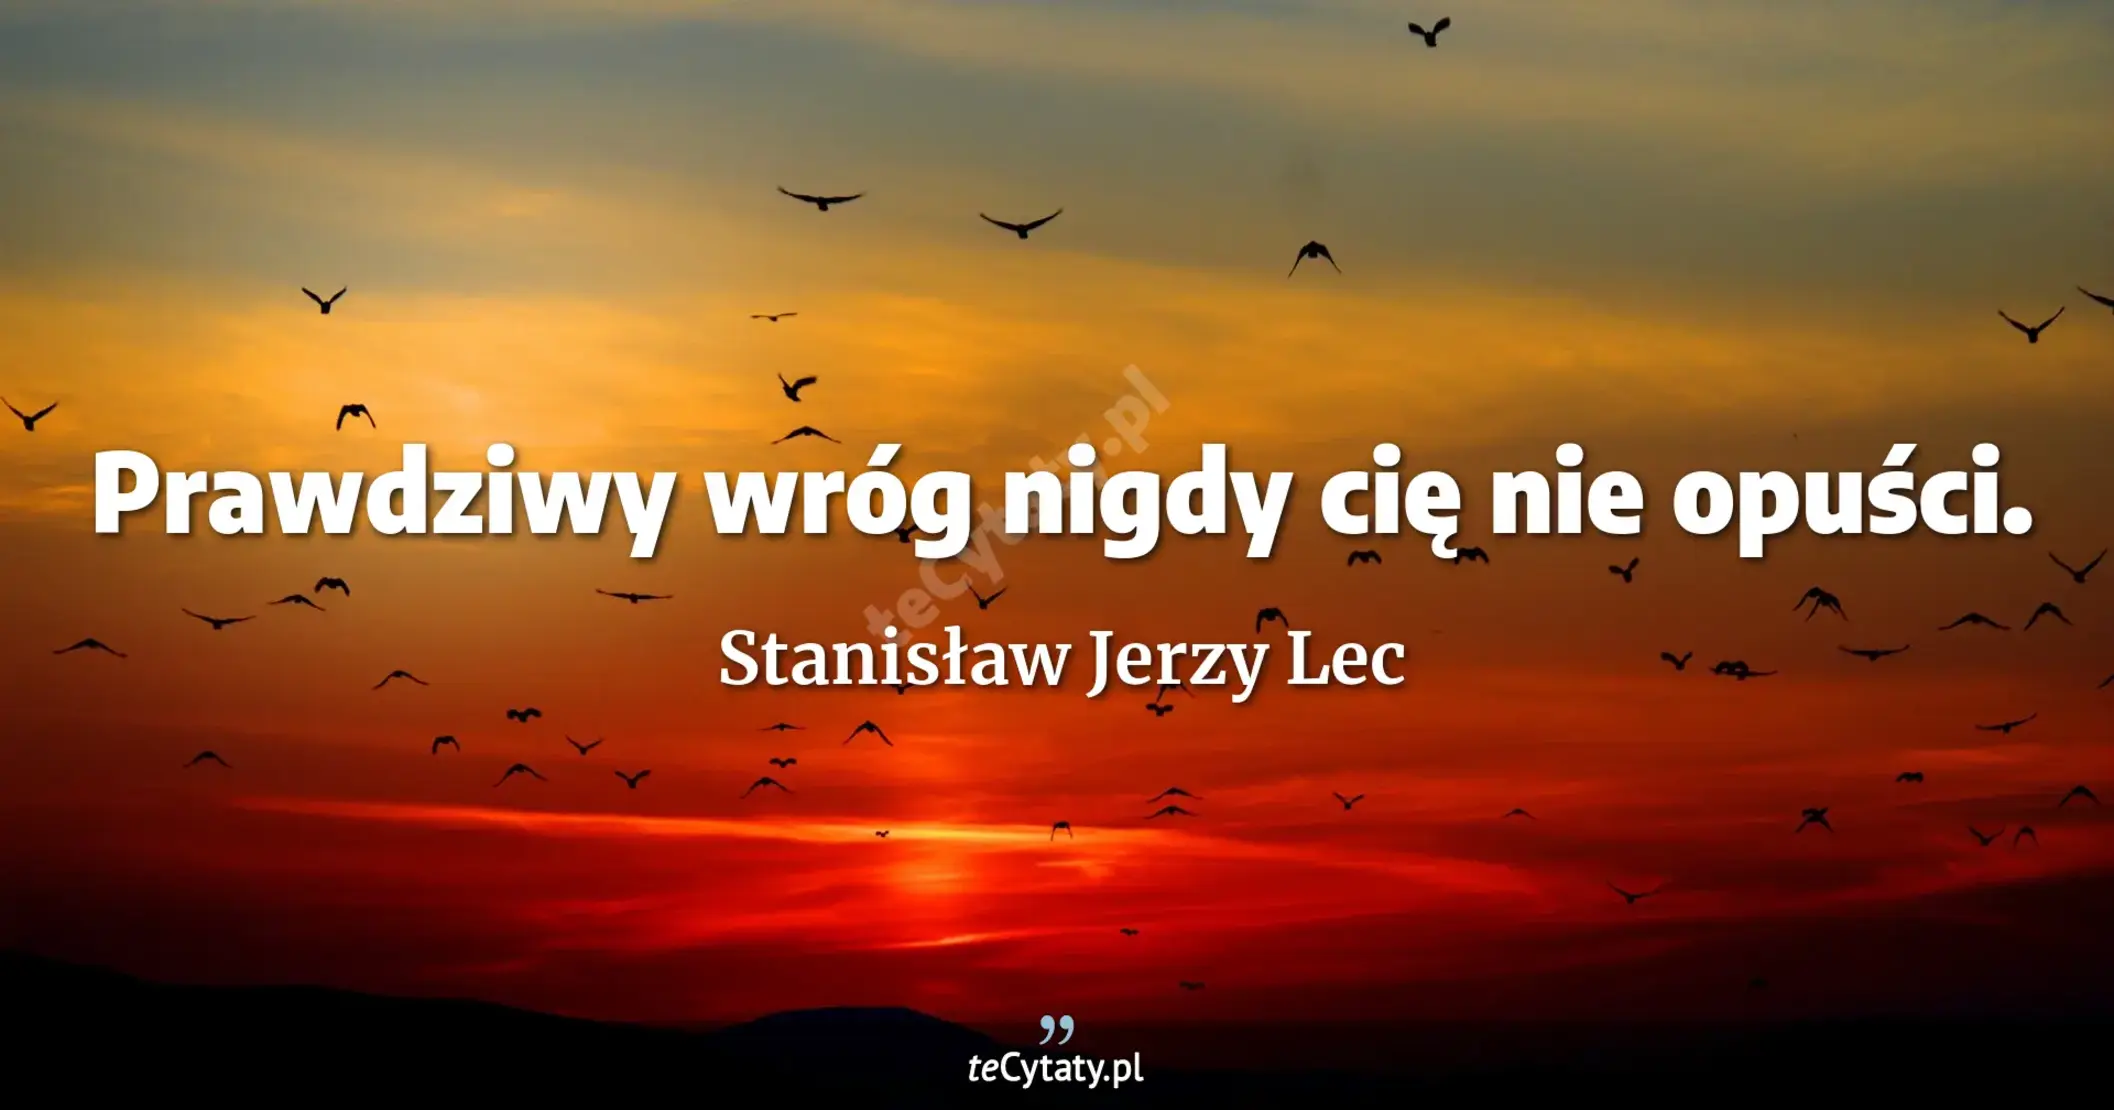 Prawdziwy wróg nigdy cię nie opuści. - Stanisław Jerzy Lec